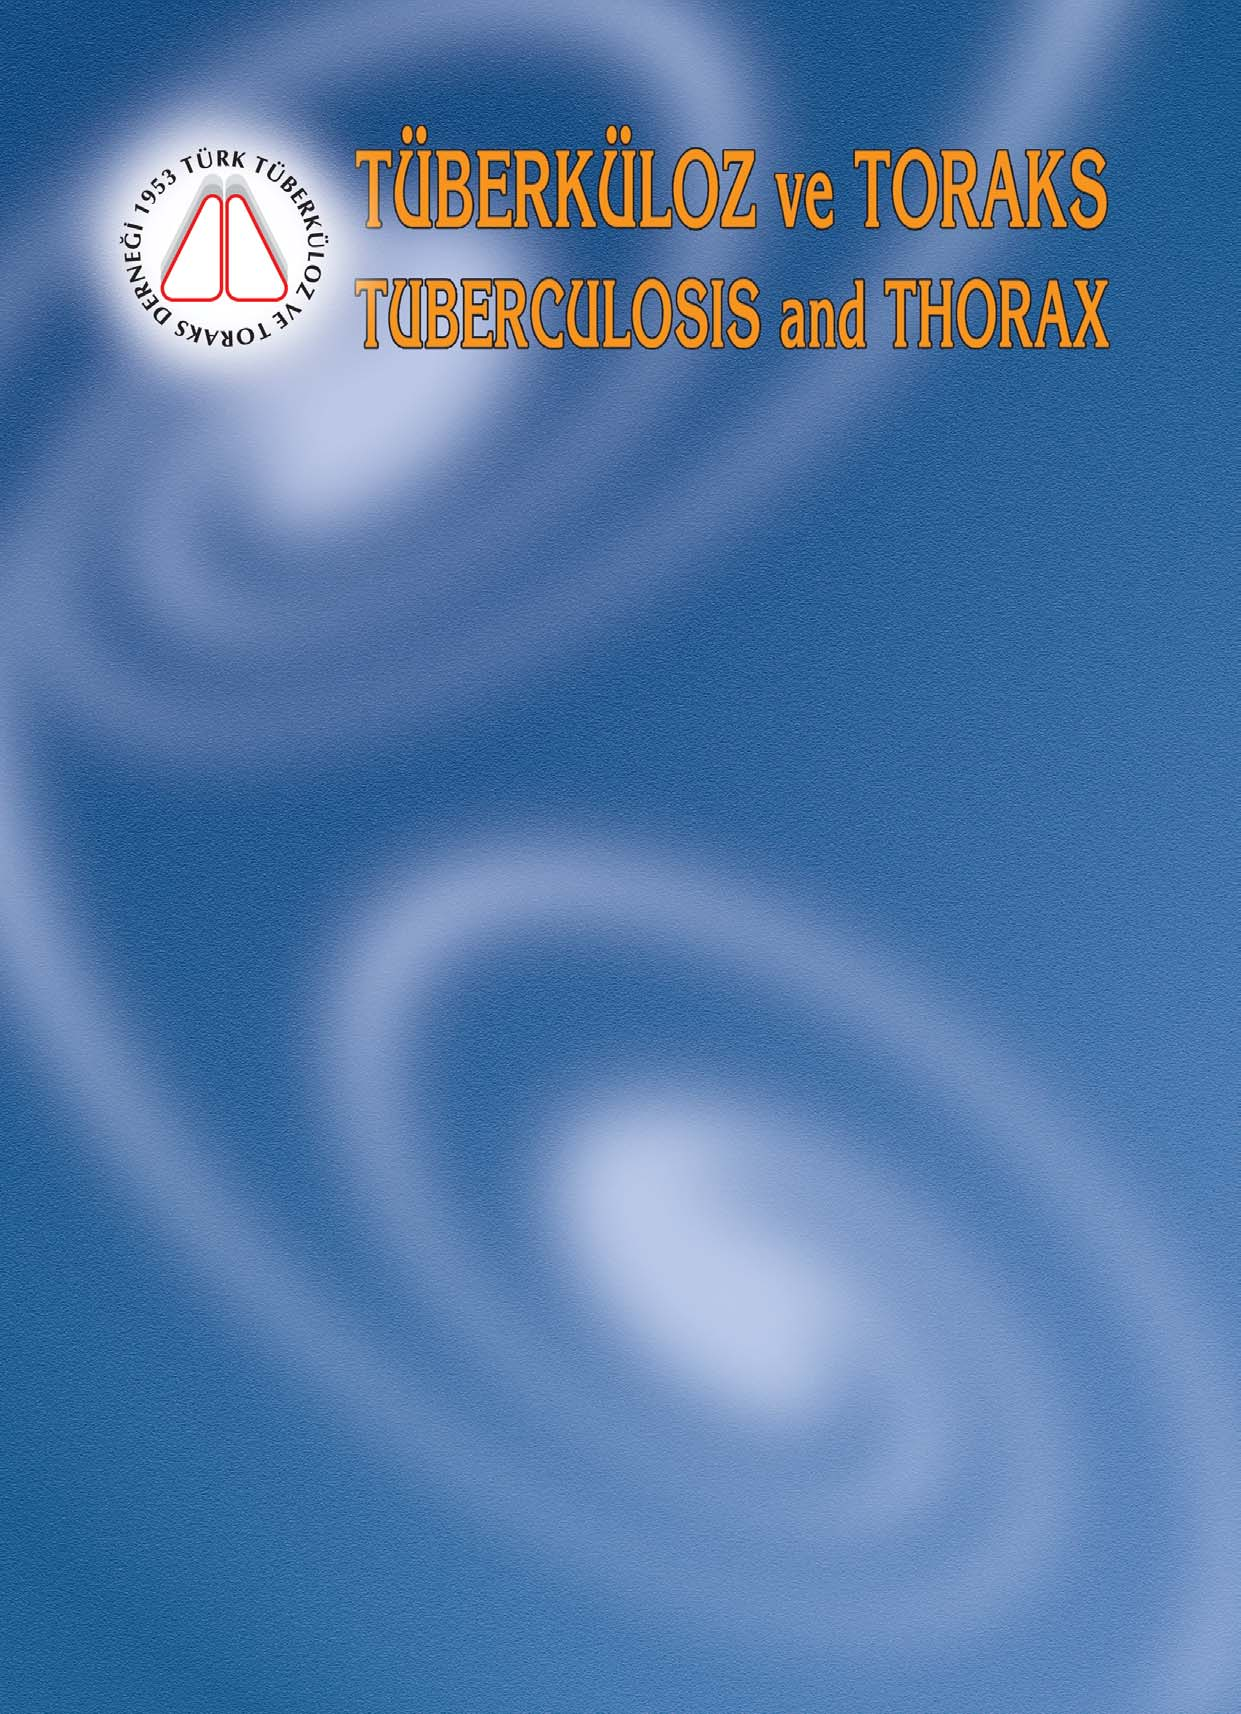 ISSN: 0494-1373 Türk Tüberküloz ve Toraks T Derneği nce üç ayda bir yayımlanır Klinik Çalışmalar (Research Articles) Oleik asit ile oluşturulan akut akciğer hasarı modelinde likopenin etkileri